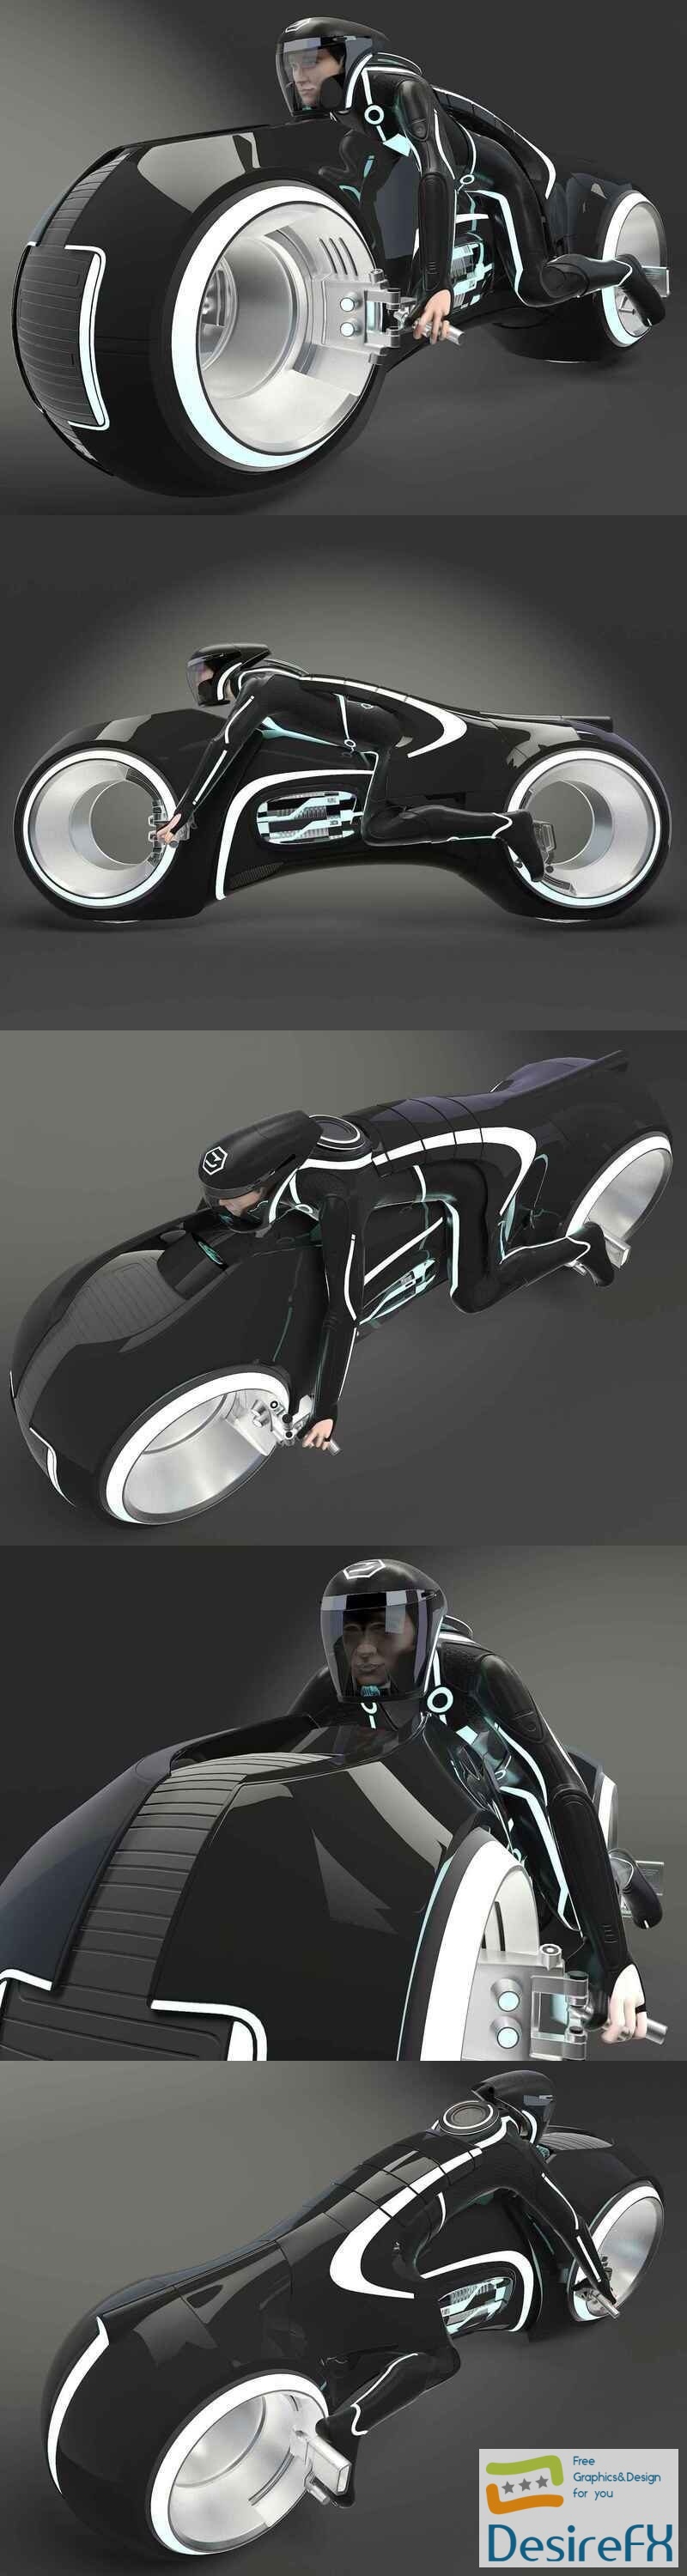 Tron Bike 3D Model